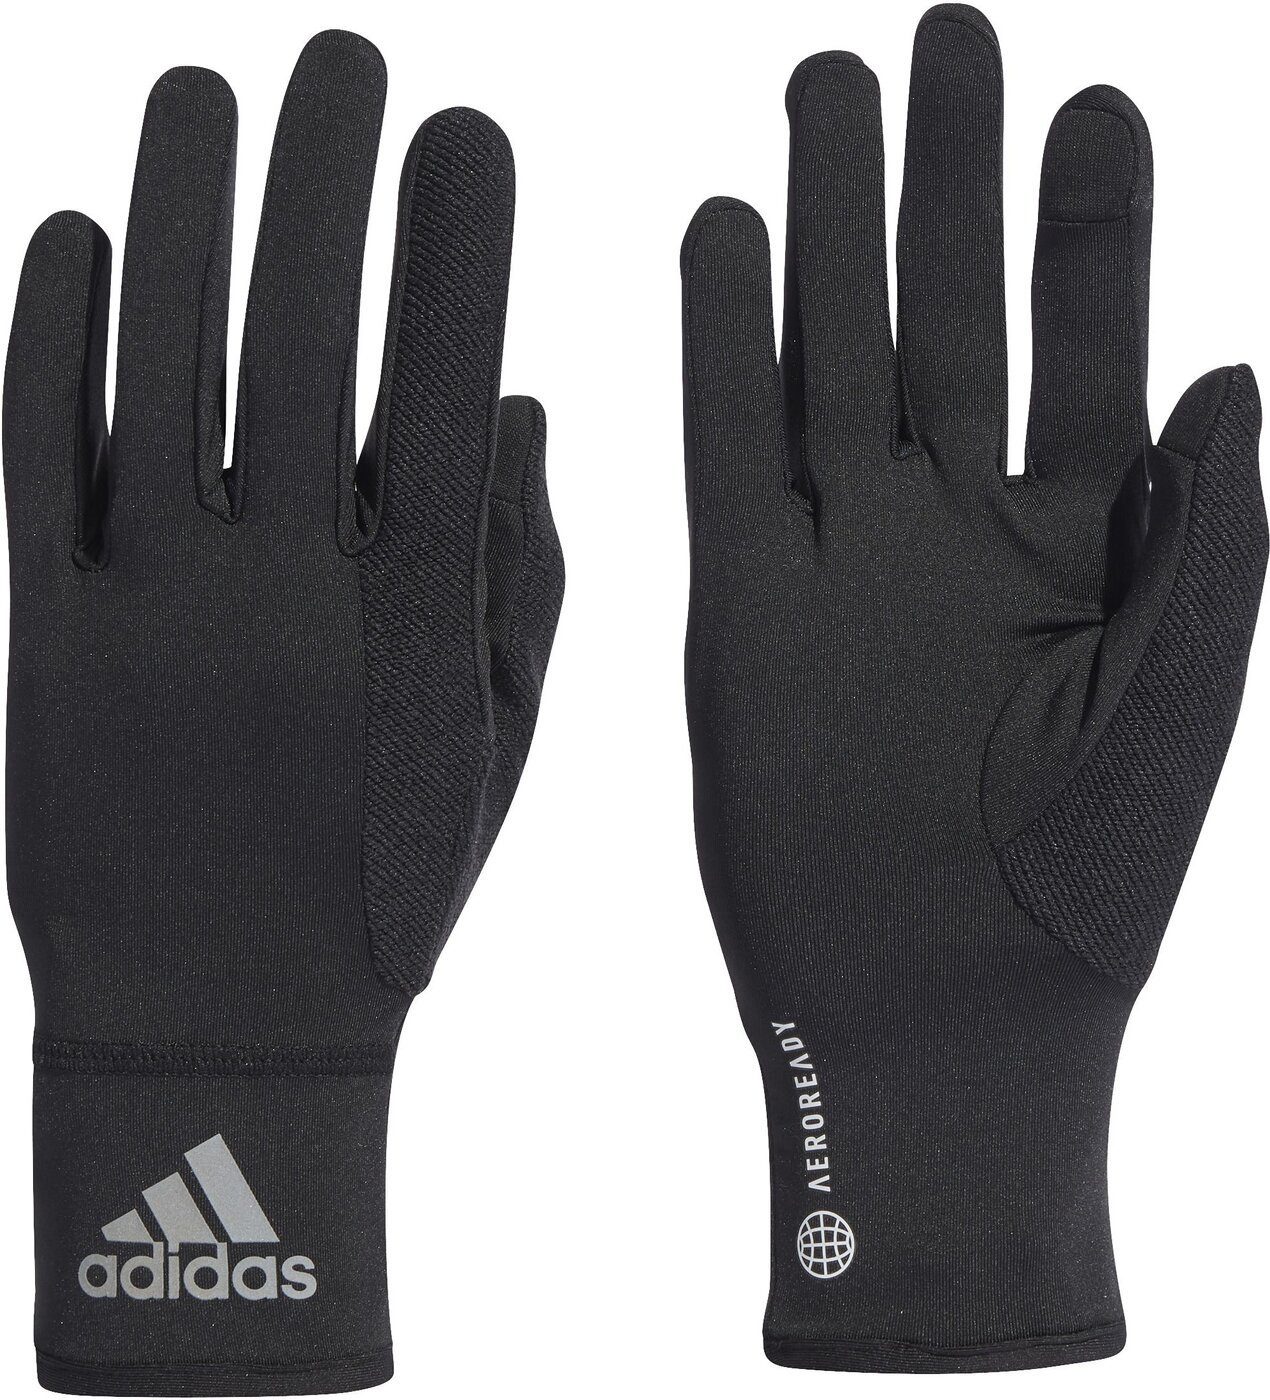 adidas Sport Handschuhe online kaufen | OTTO